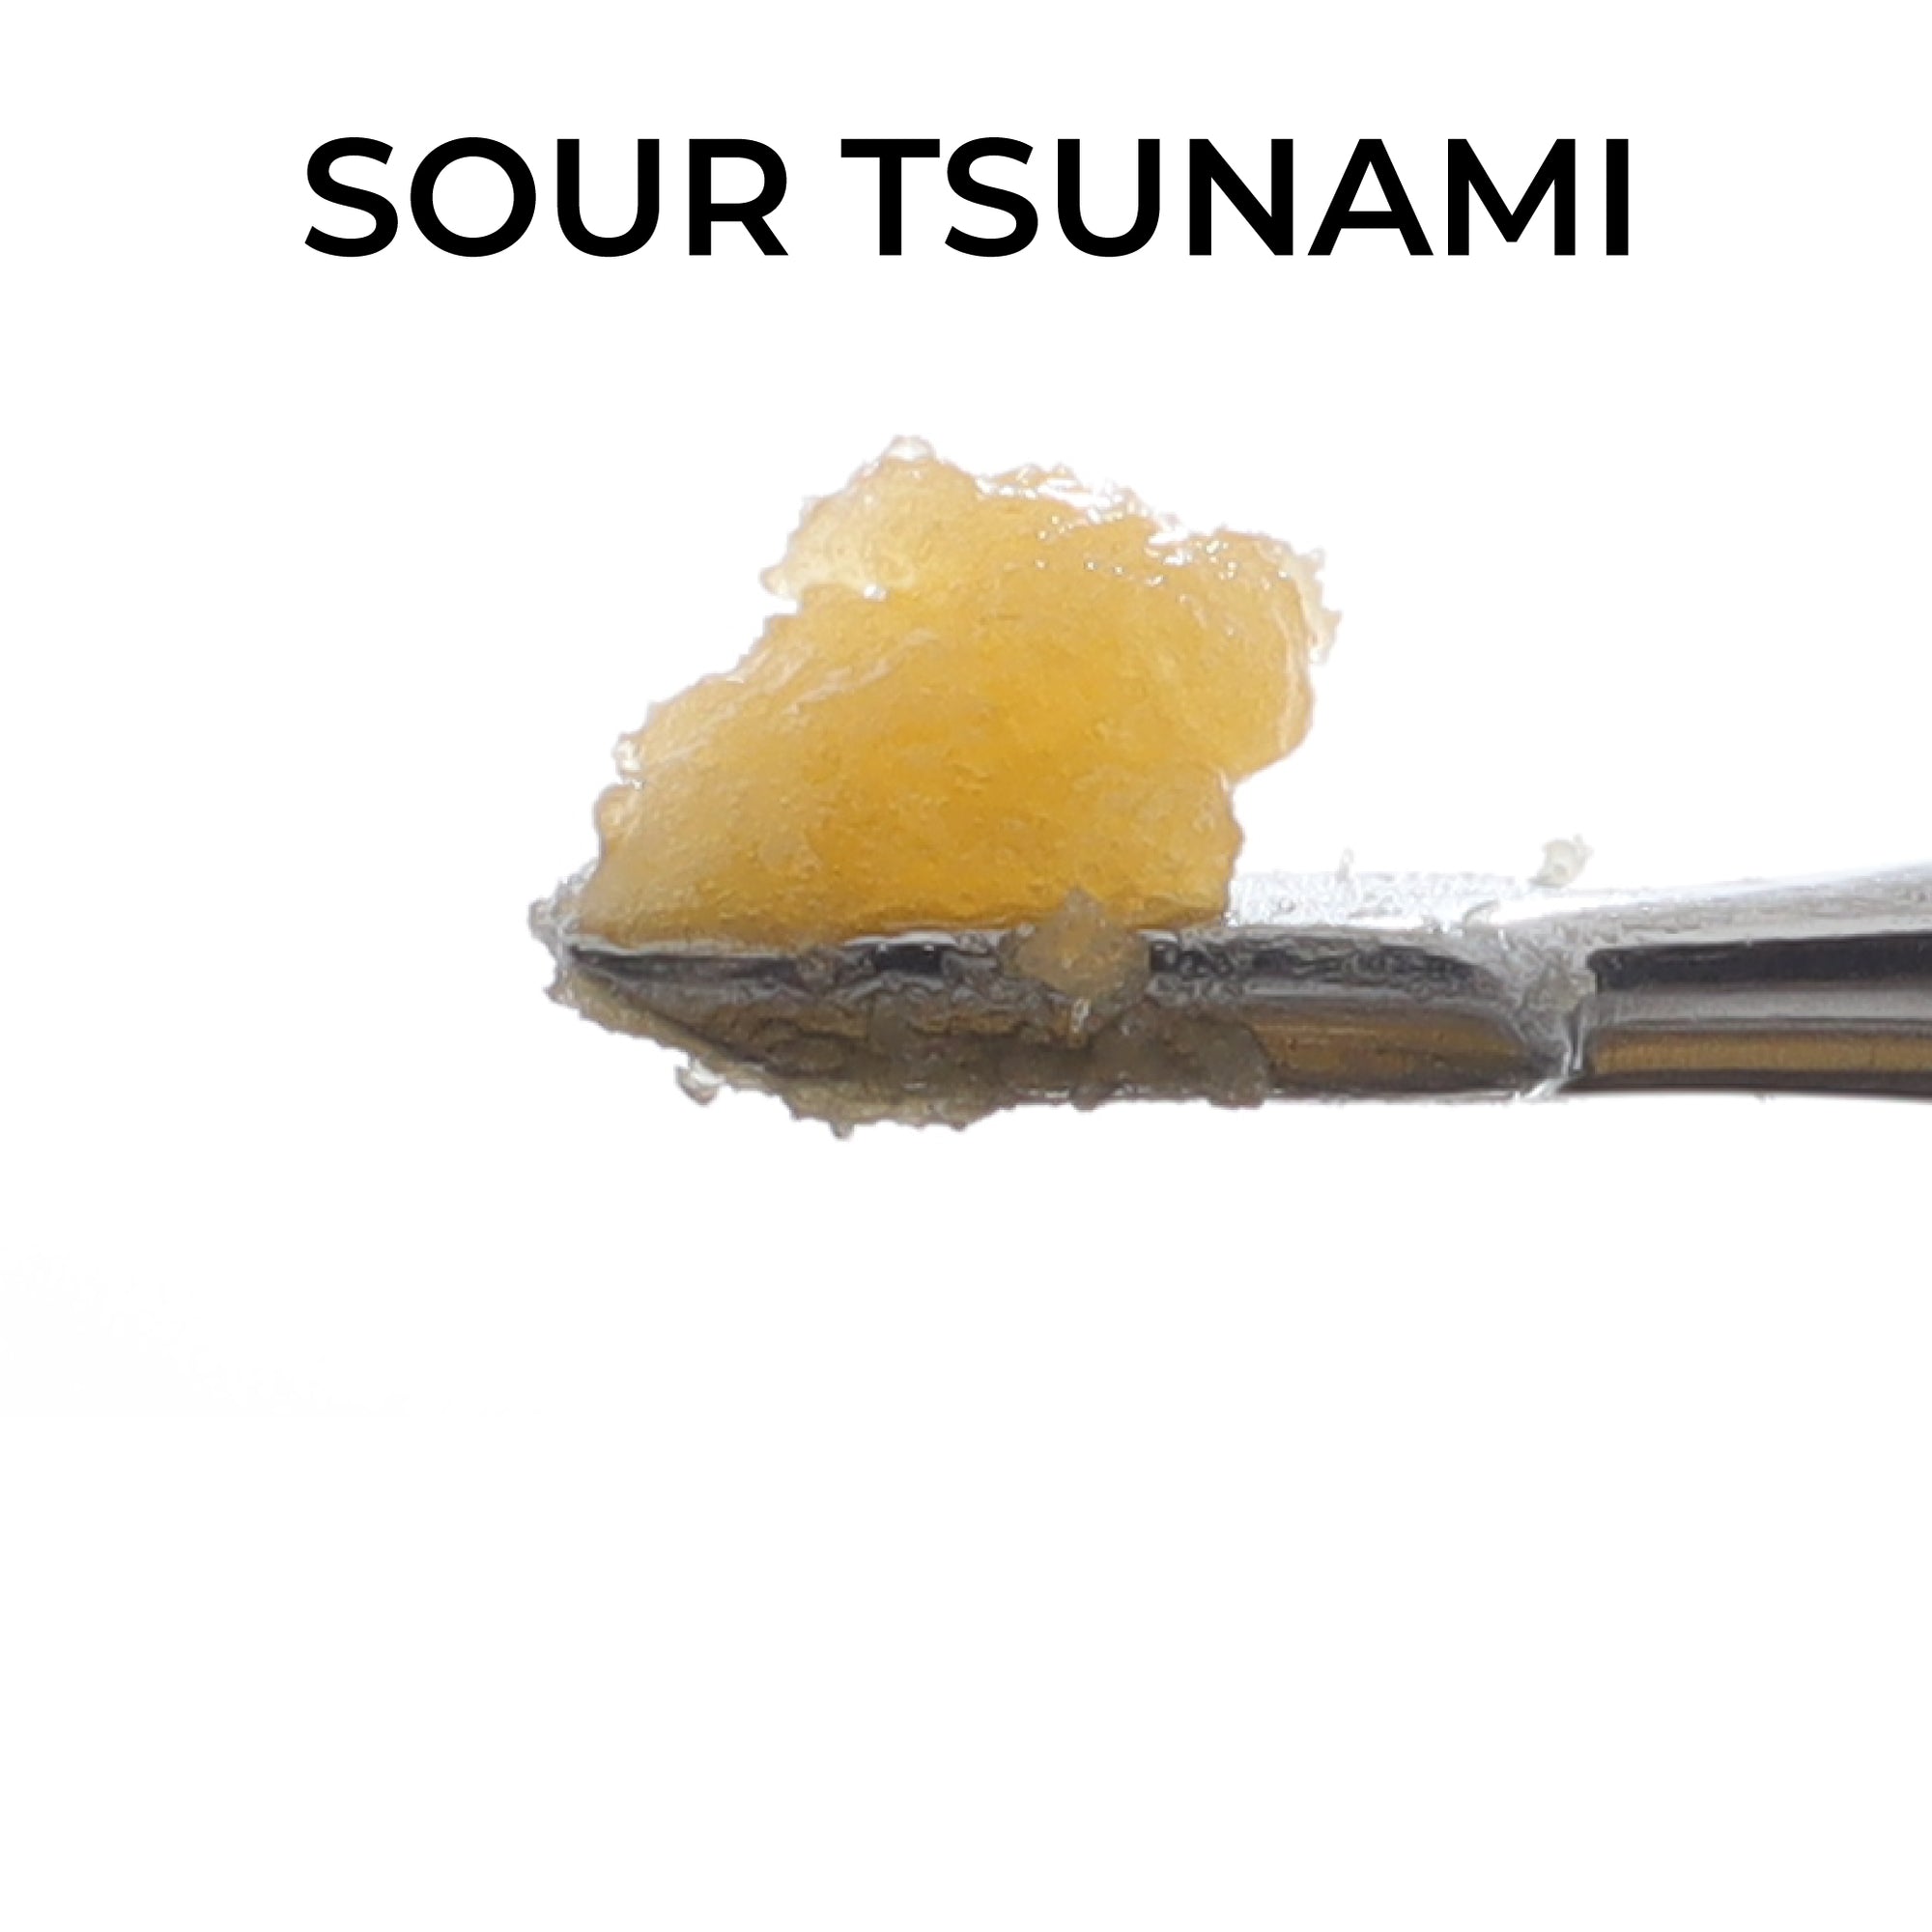 Sauce Warehouse Sour Tsunami Mixed Live Resin Close Up